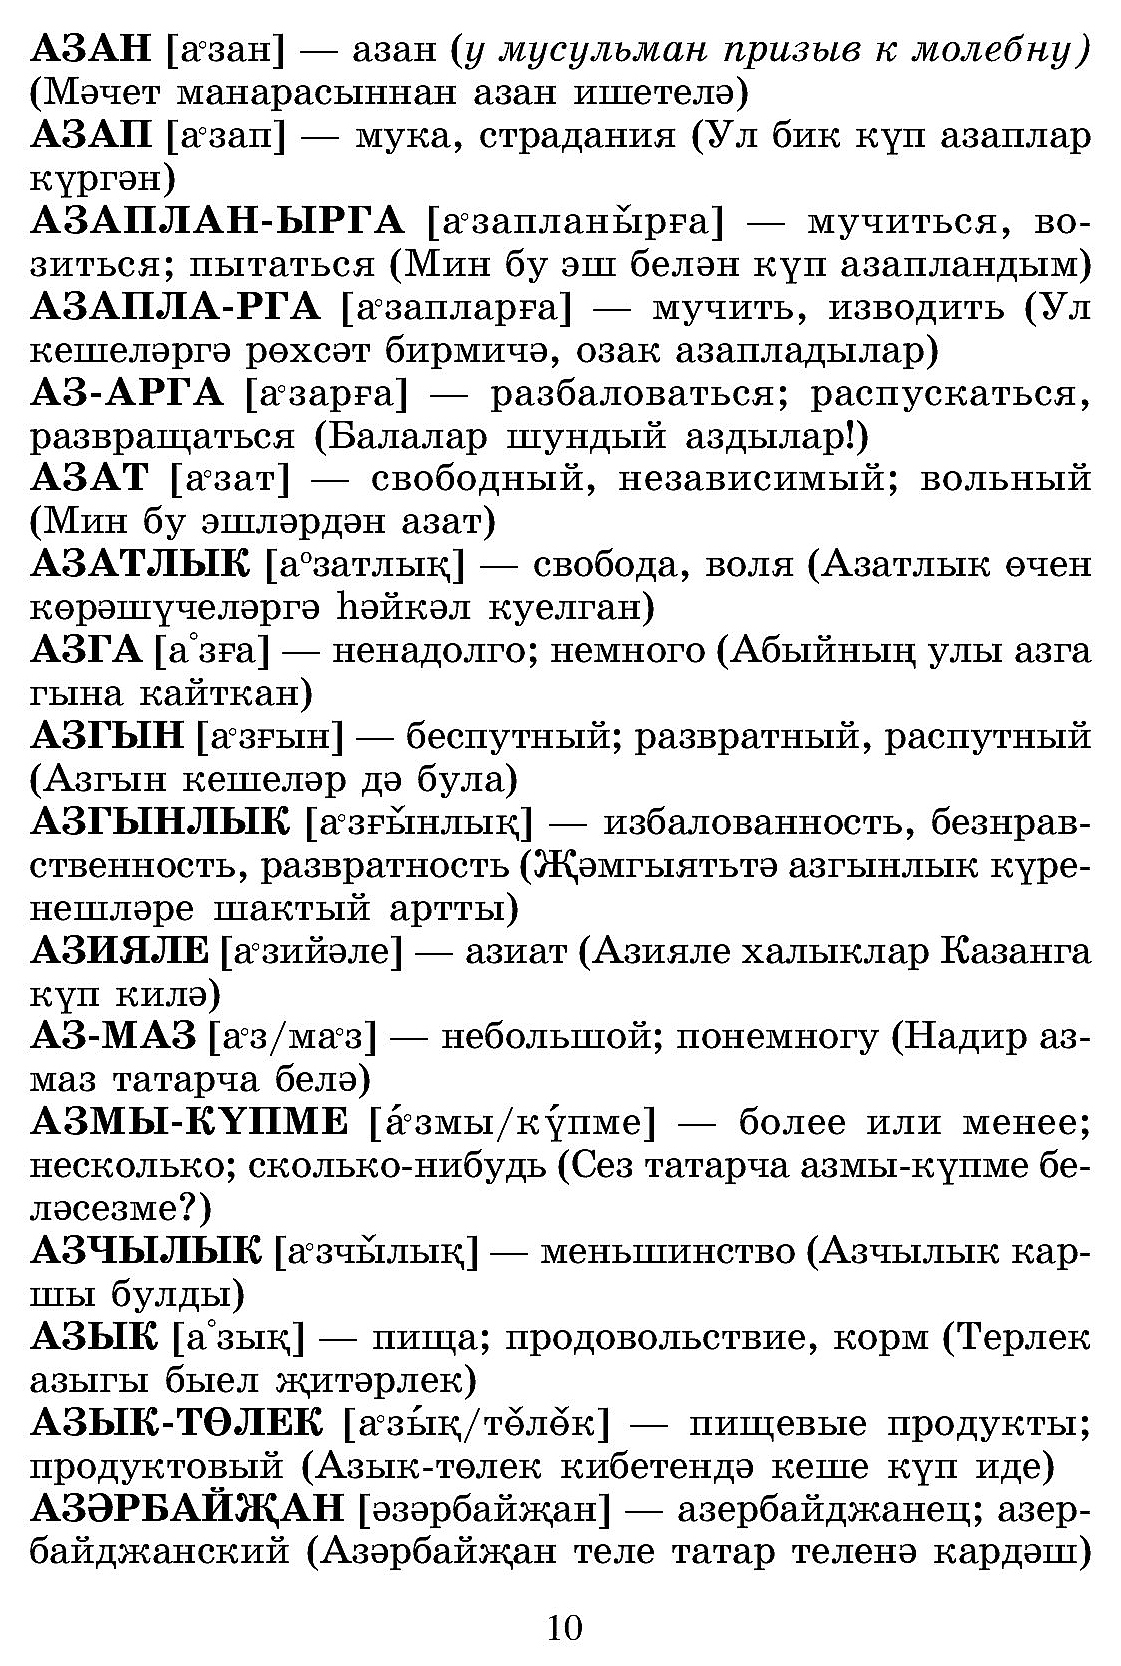 Маты на татарском с переводом на русский